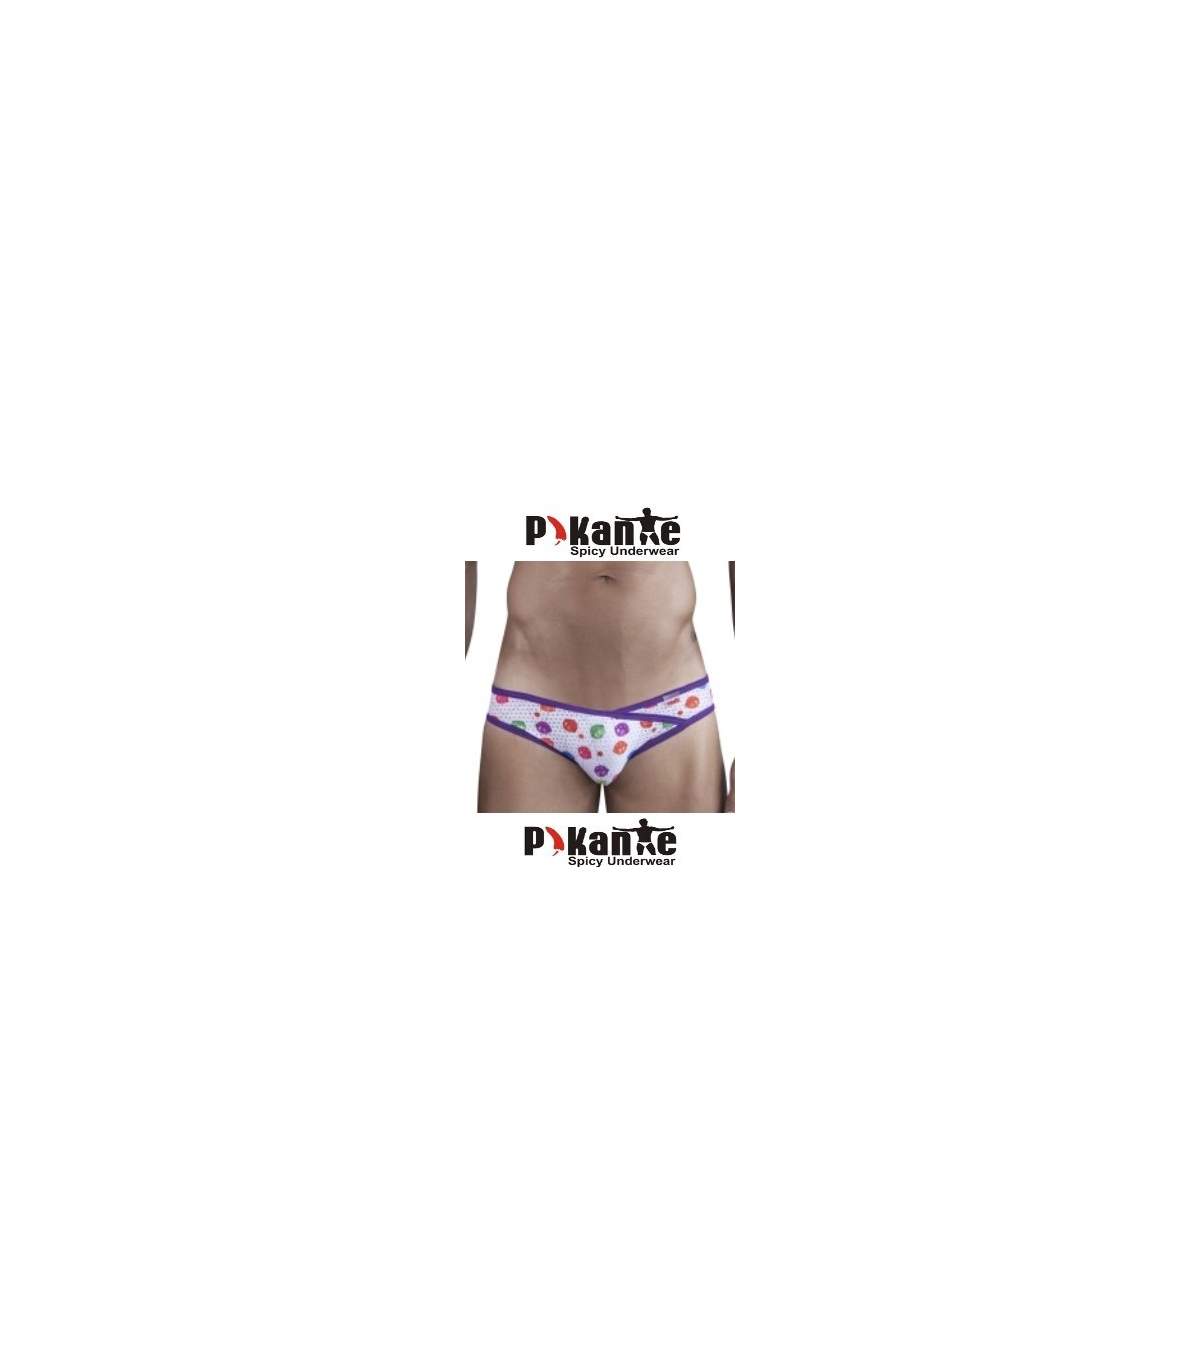 CAMPAIGN: Pikante Underwear Spring 2013